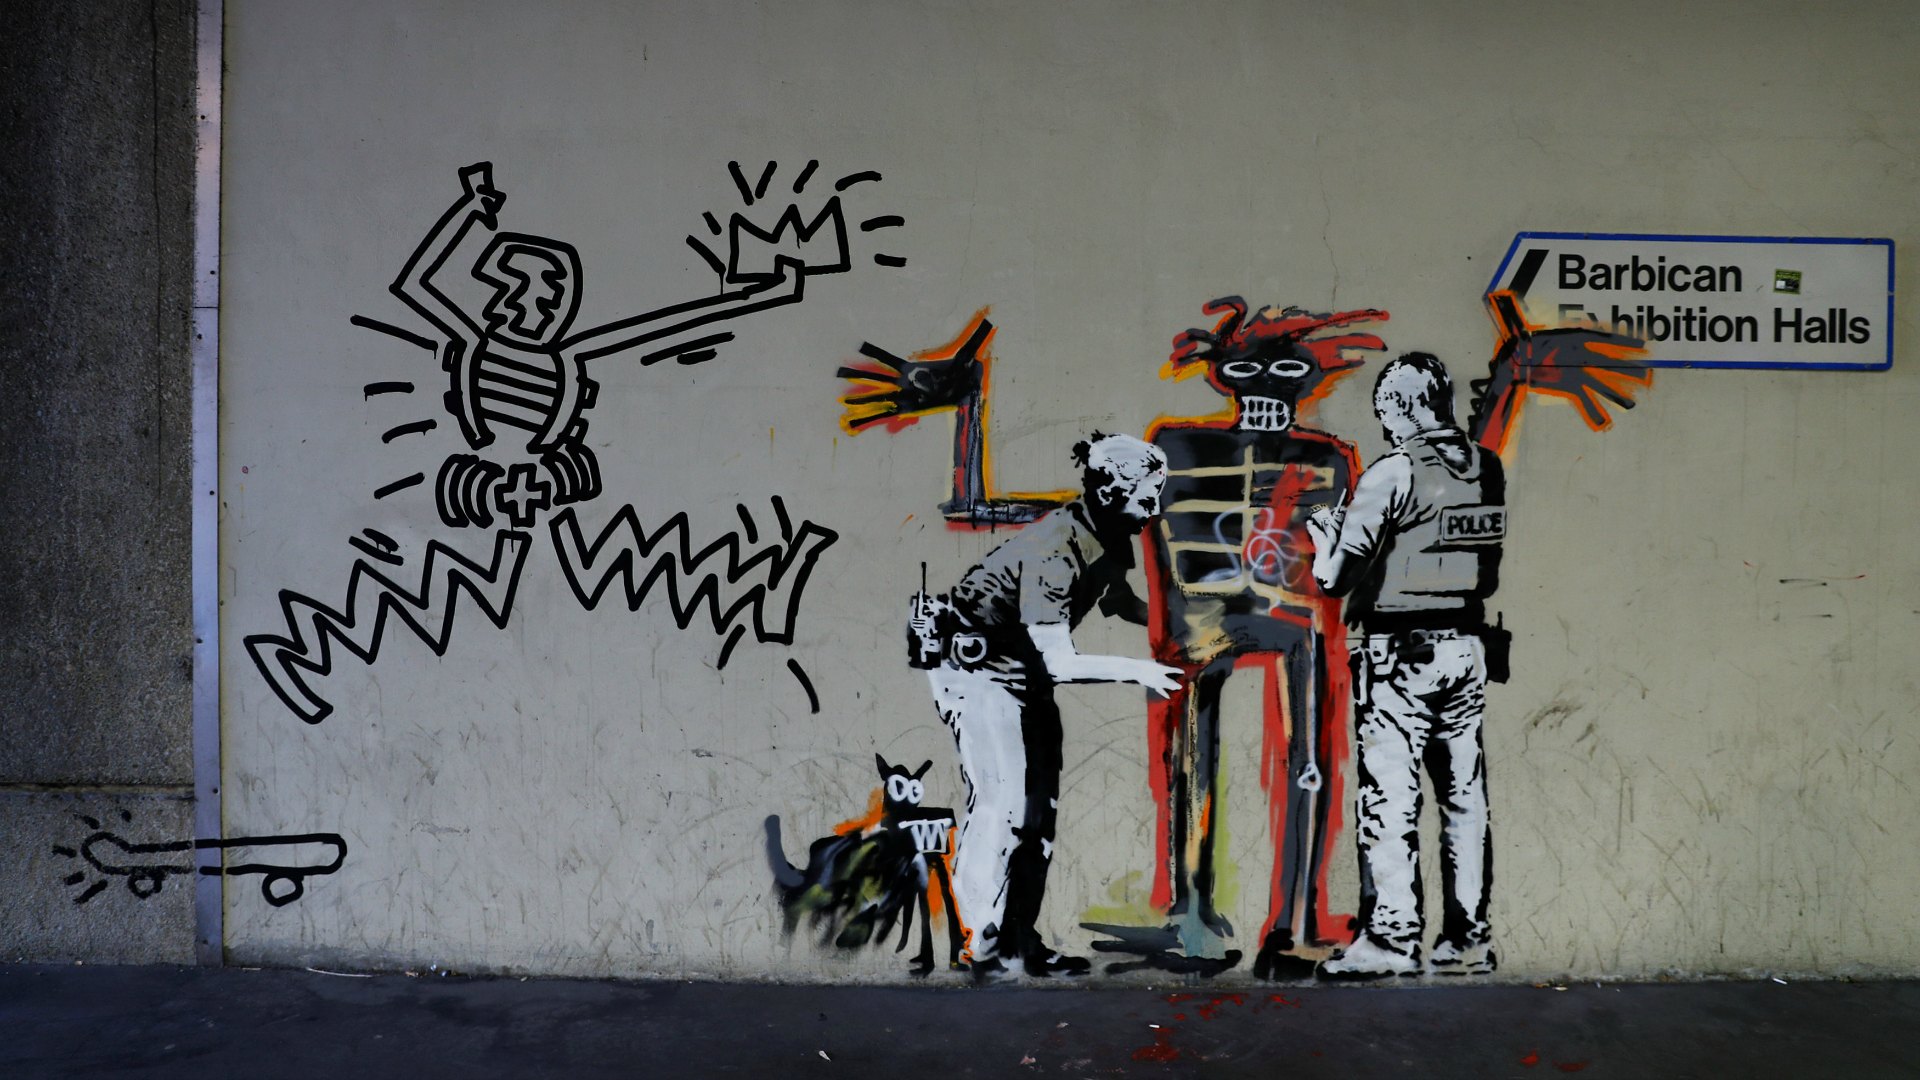 Banksy reaparece con dos murales en el centro Barbican de Londres